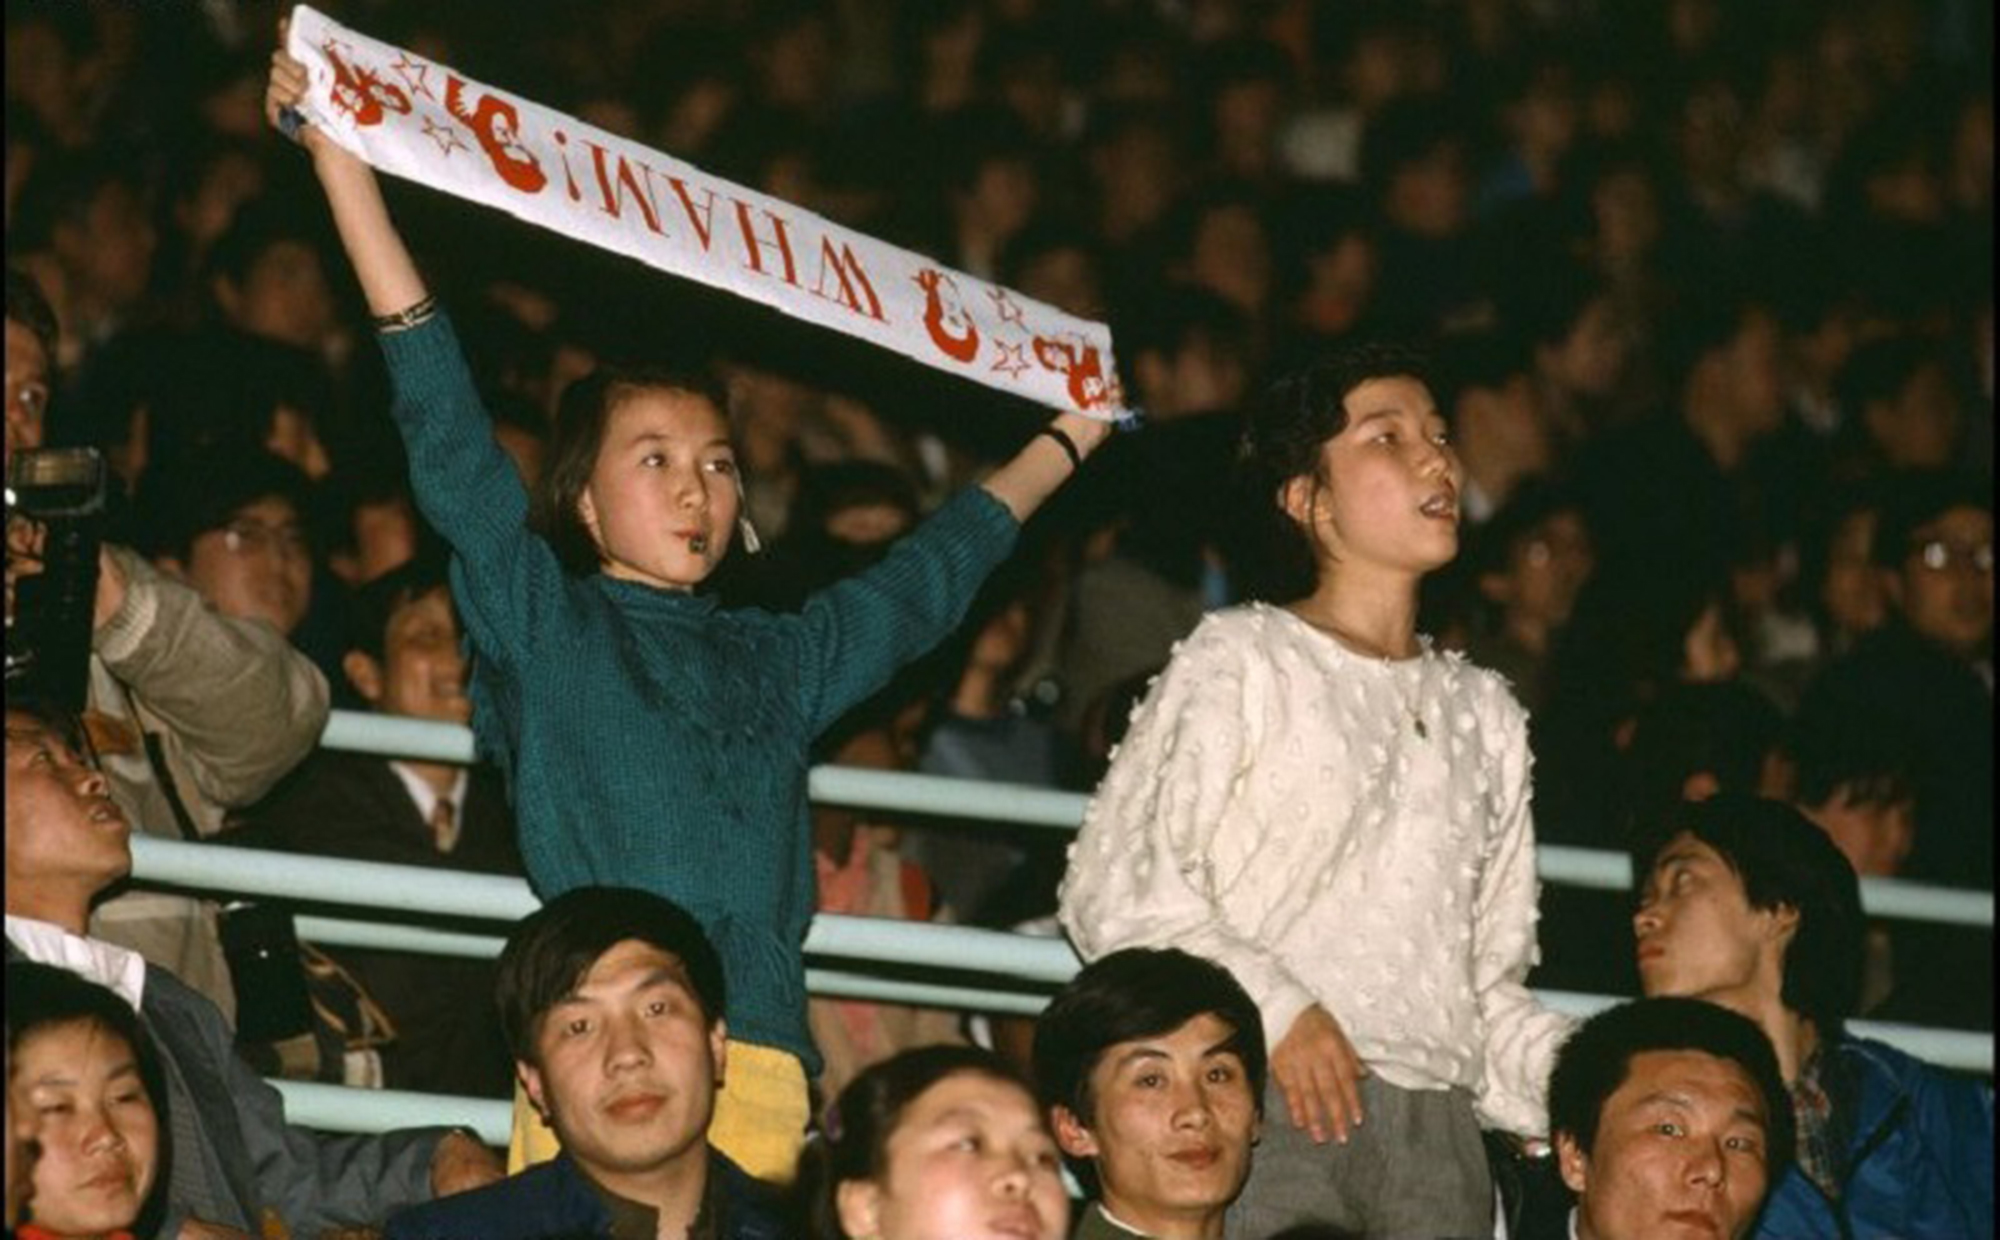 Wham-Fans bei einem Konzert in China, 1985